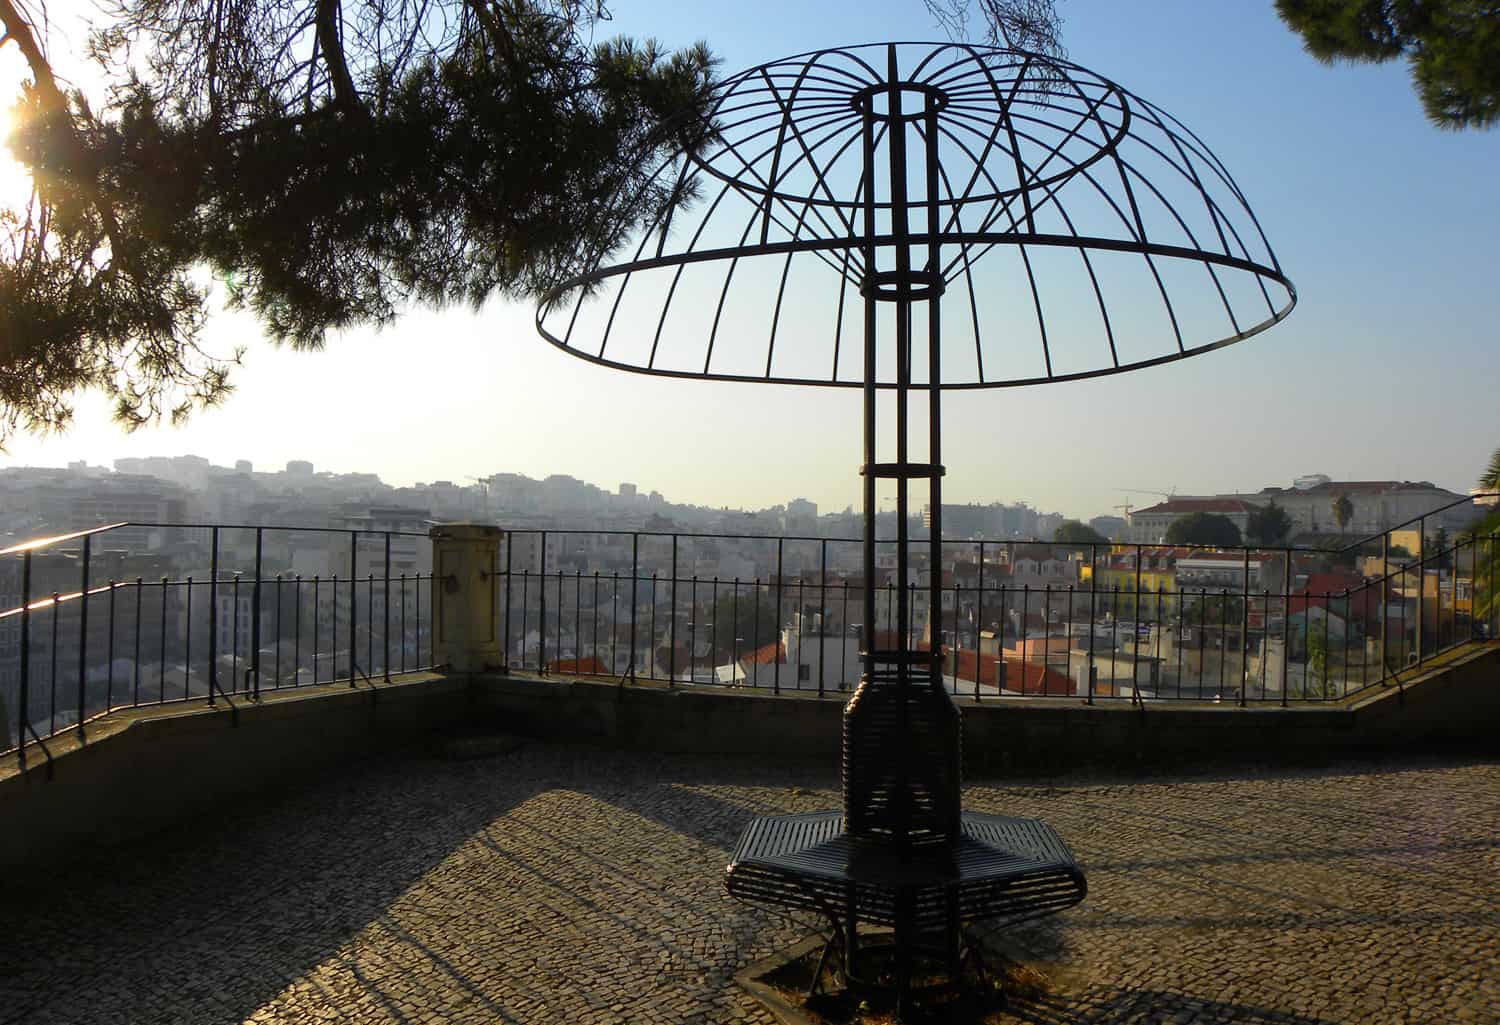 Miradouro Jardim do Torel, Lisbon, Portugal